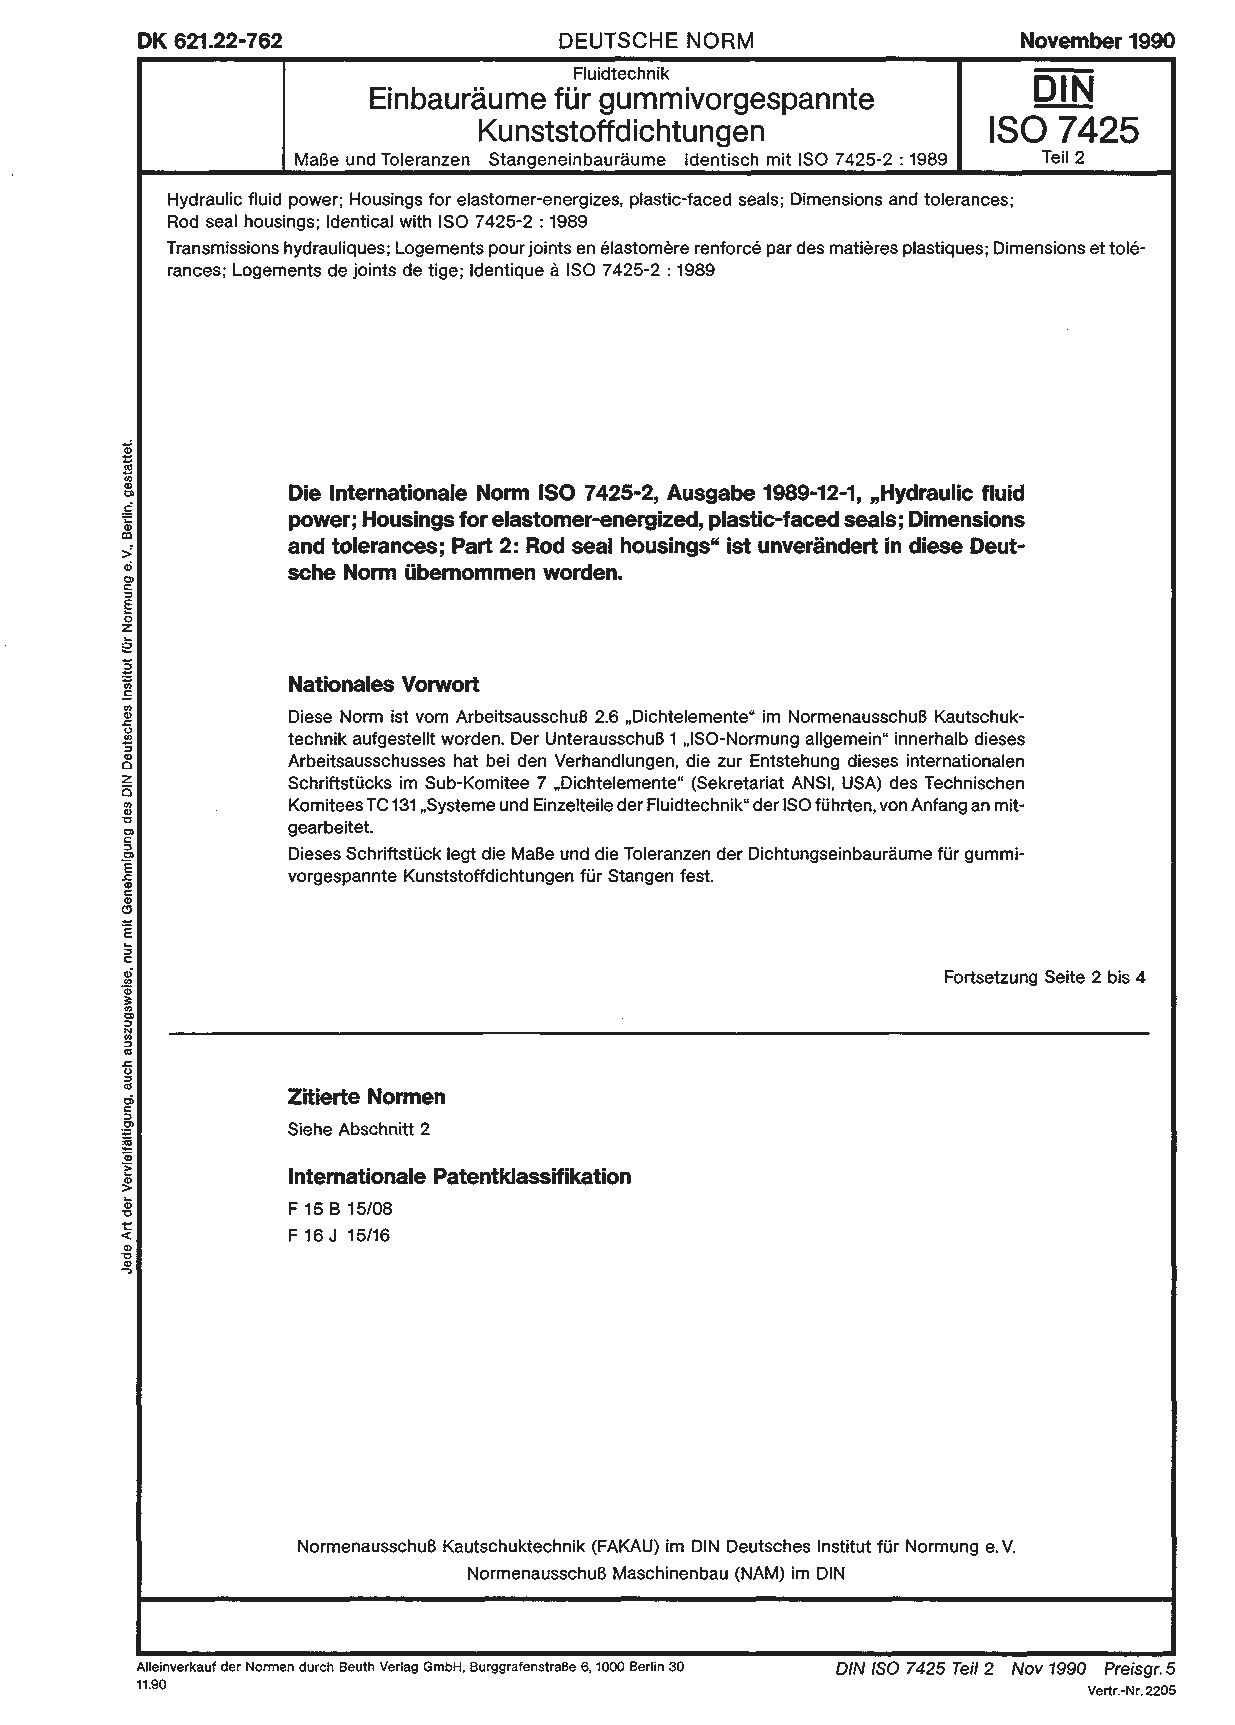 DIN ISO 7425-2:1990封面图